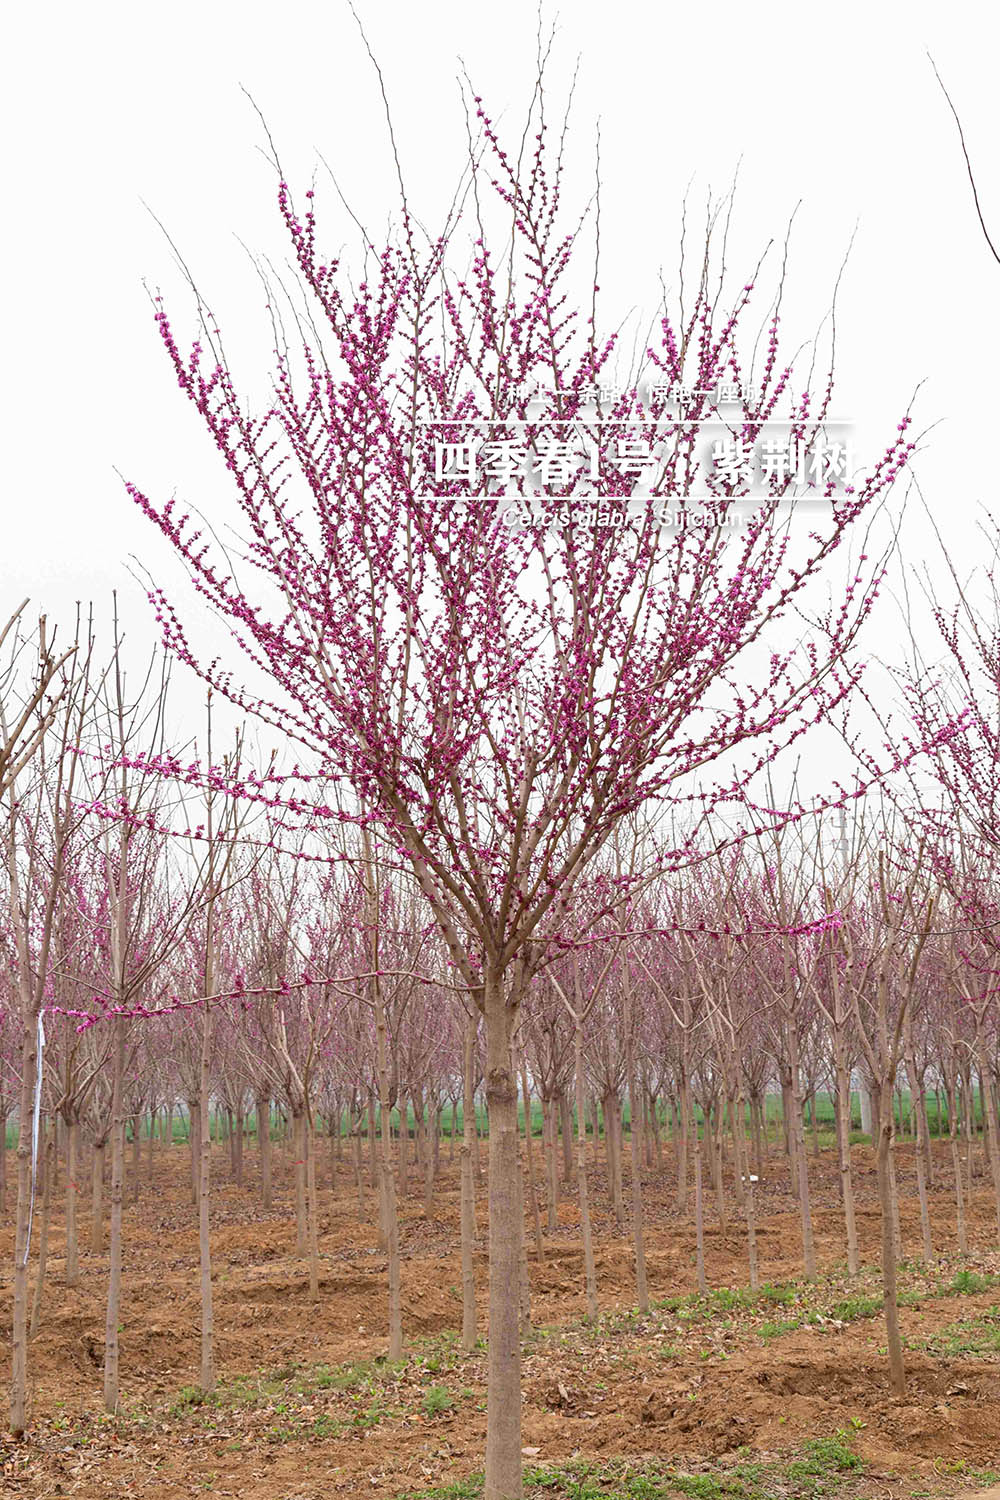 3.19“四季春一號”- 紫荊樹